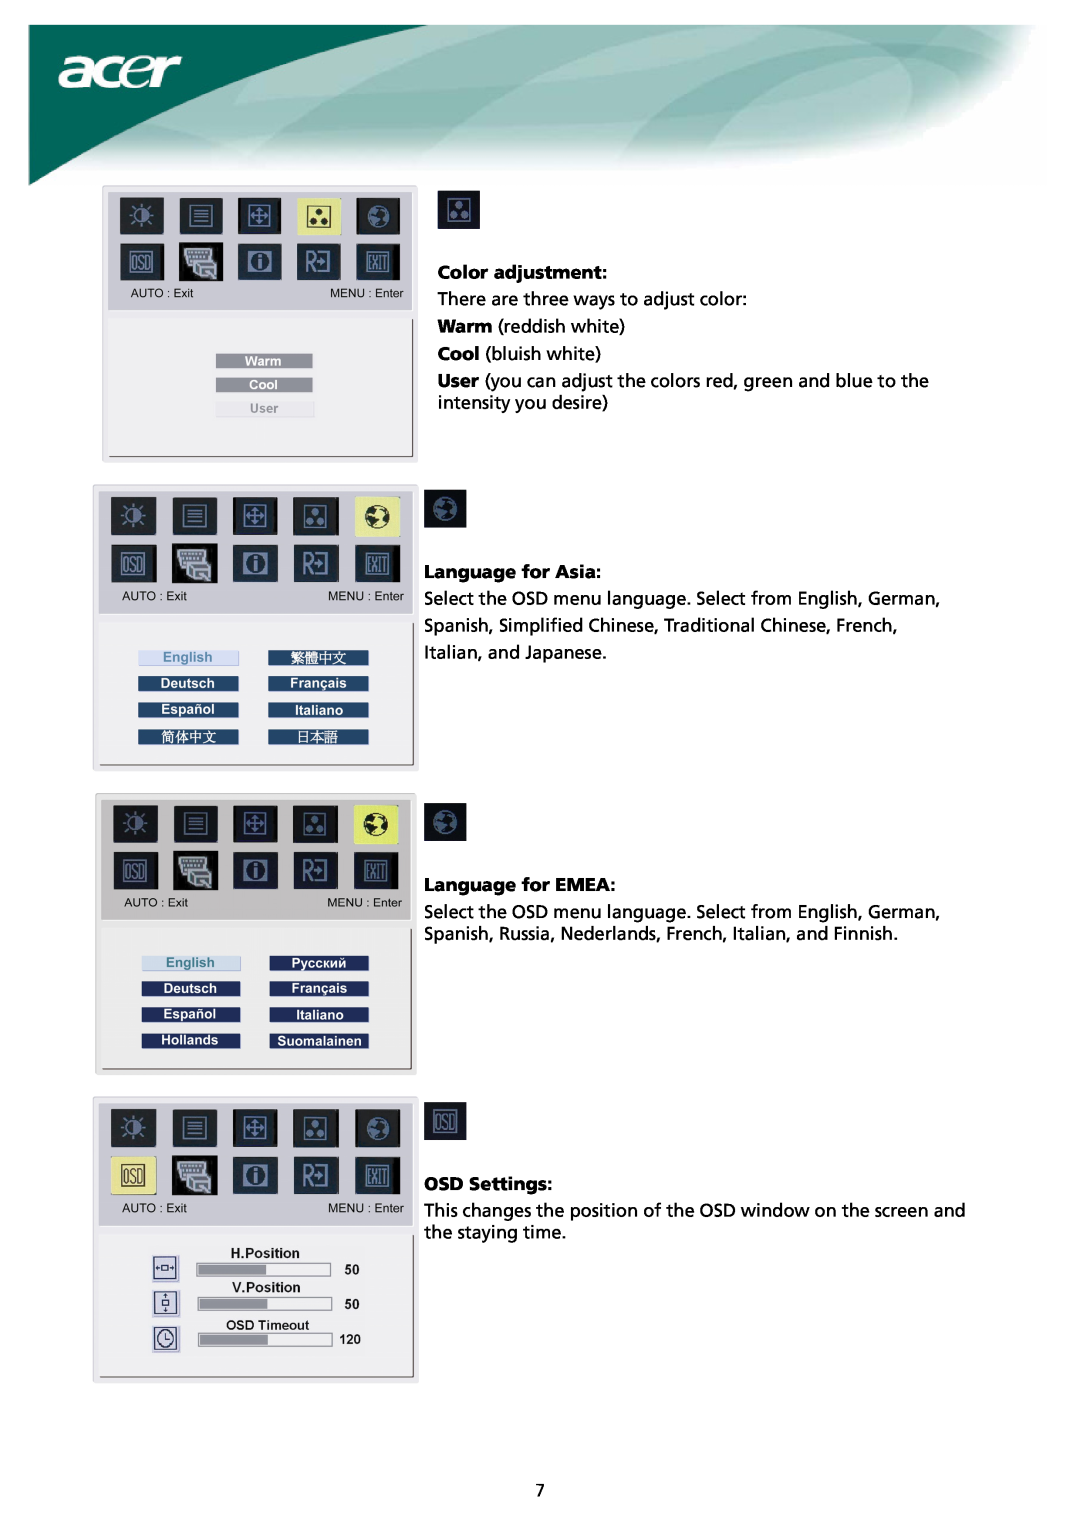 Acer X191 manual Color adjustment, Language for Asia, Language for EMEA, OSD Settings 